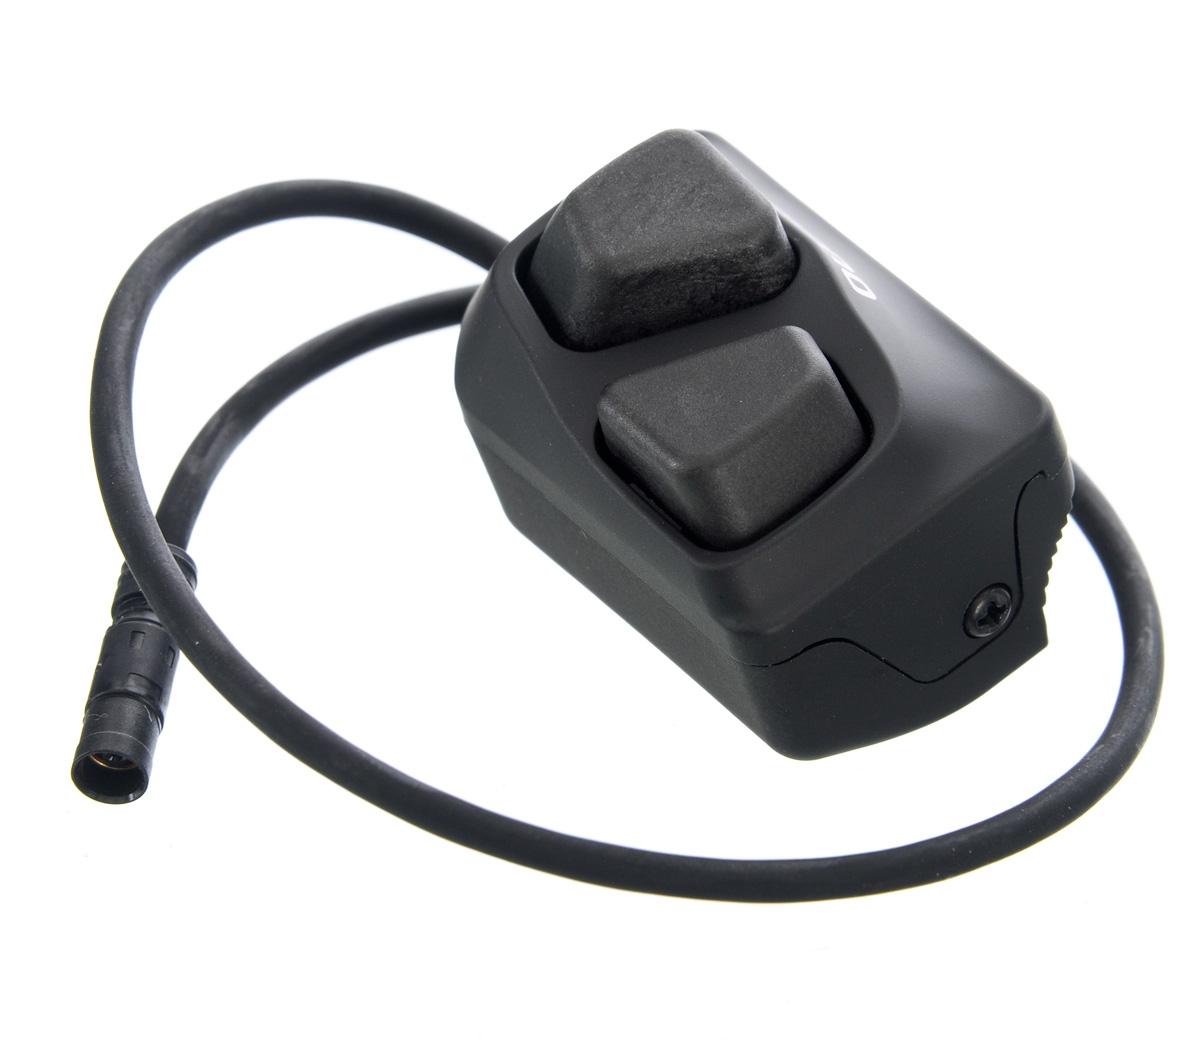 Shimano Ultegra Di2 R600 Climbing Shifter Switch - Black